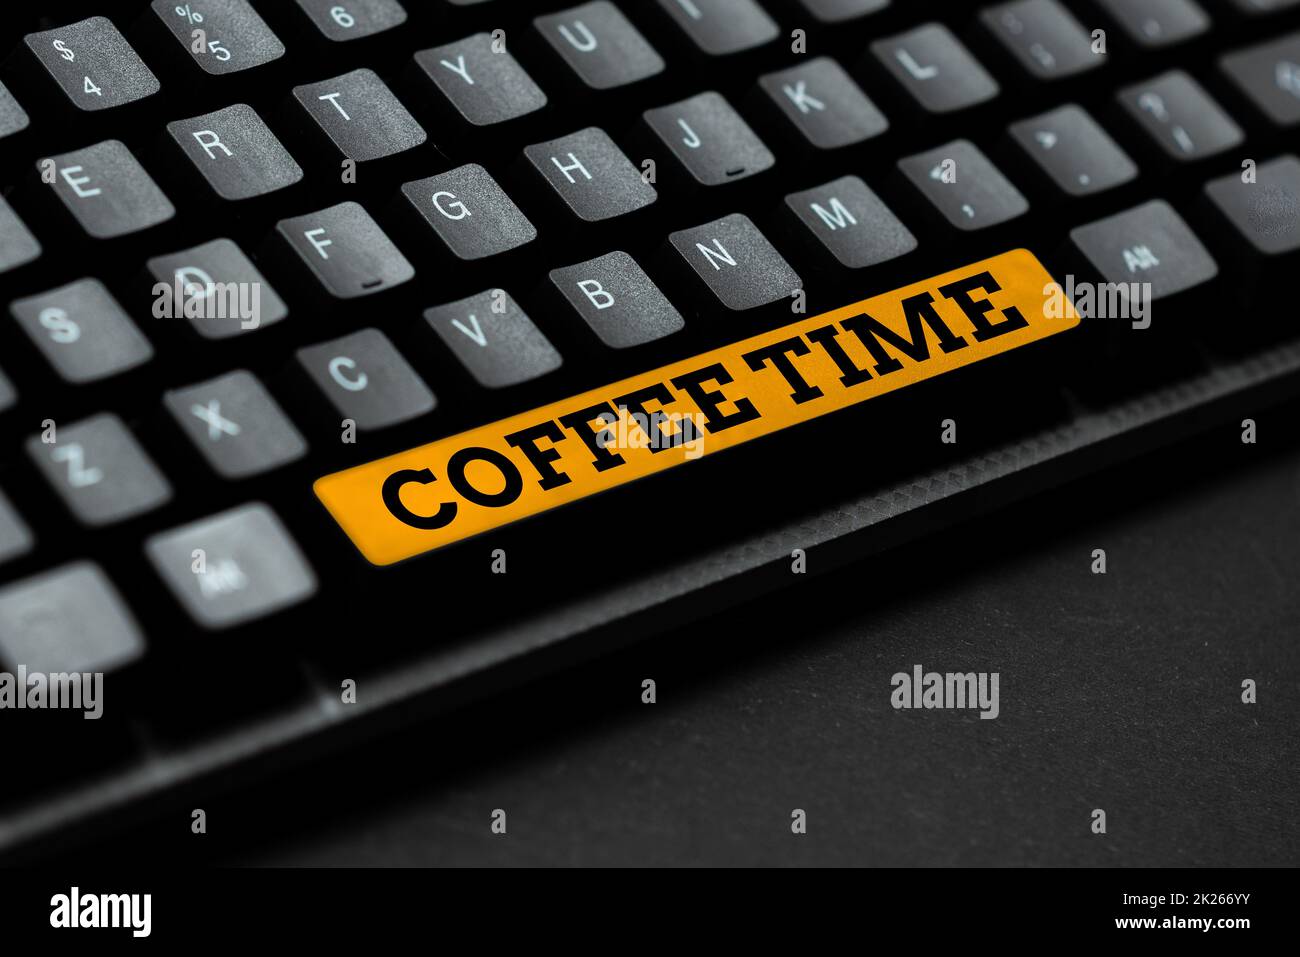 Konzeptunterschrift Kaffeezeit. Geschäftsübersicht ein ausgewählter Zeitraum, in dem eine Tasse Kaffee serviert und getrunken wird, mit Online-Freunden in Verbindung steht und Bekanntschaften im Internet macht Stockfoto